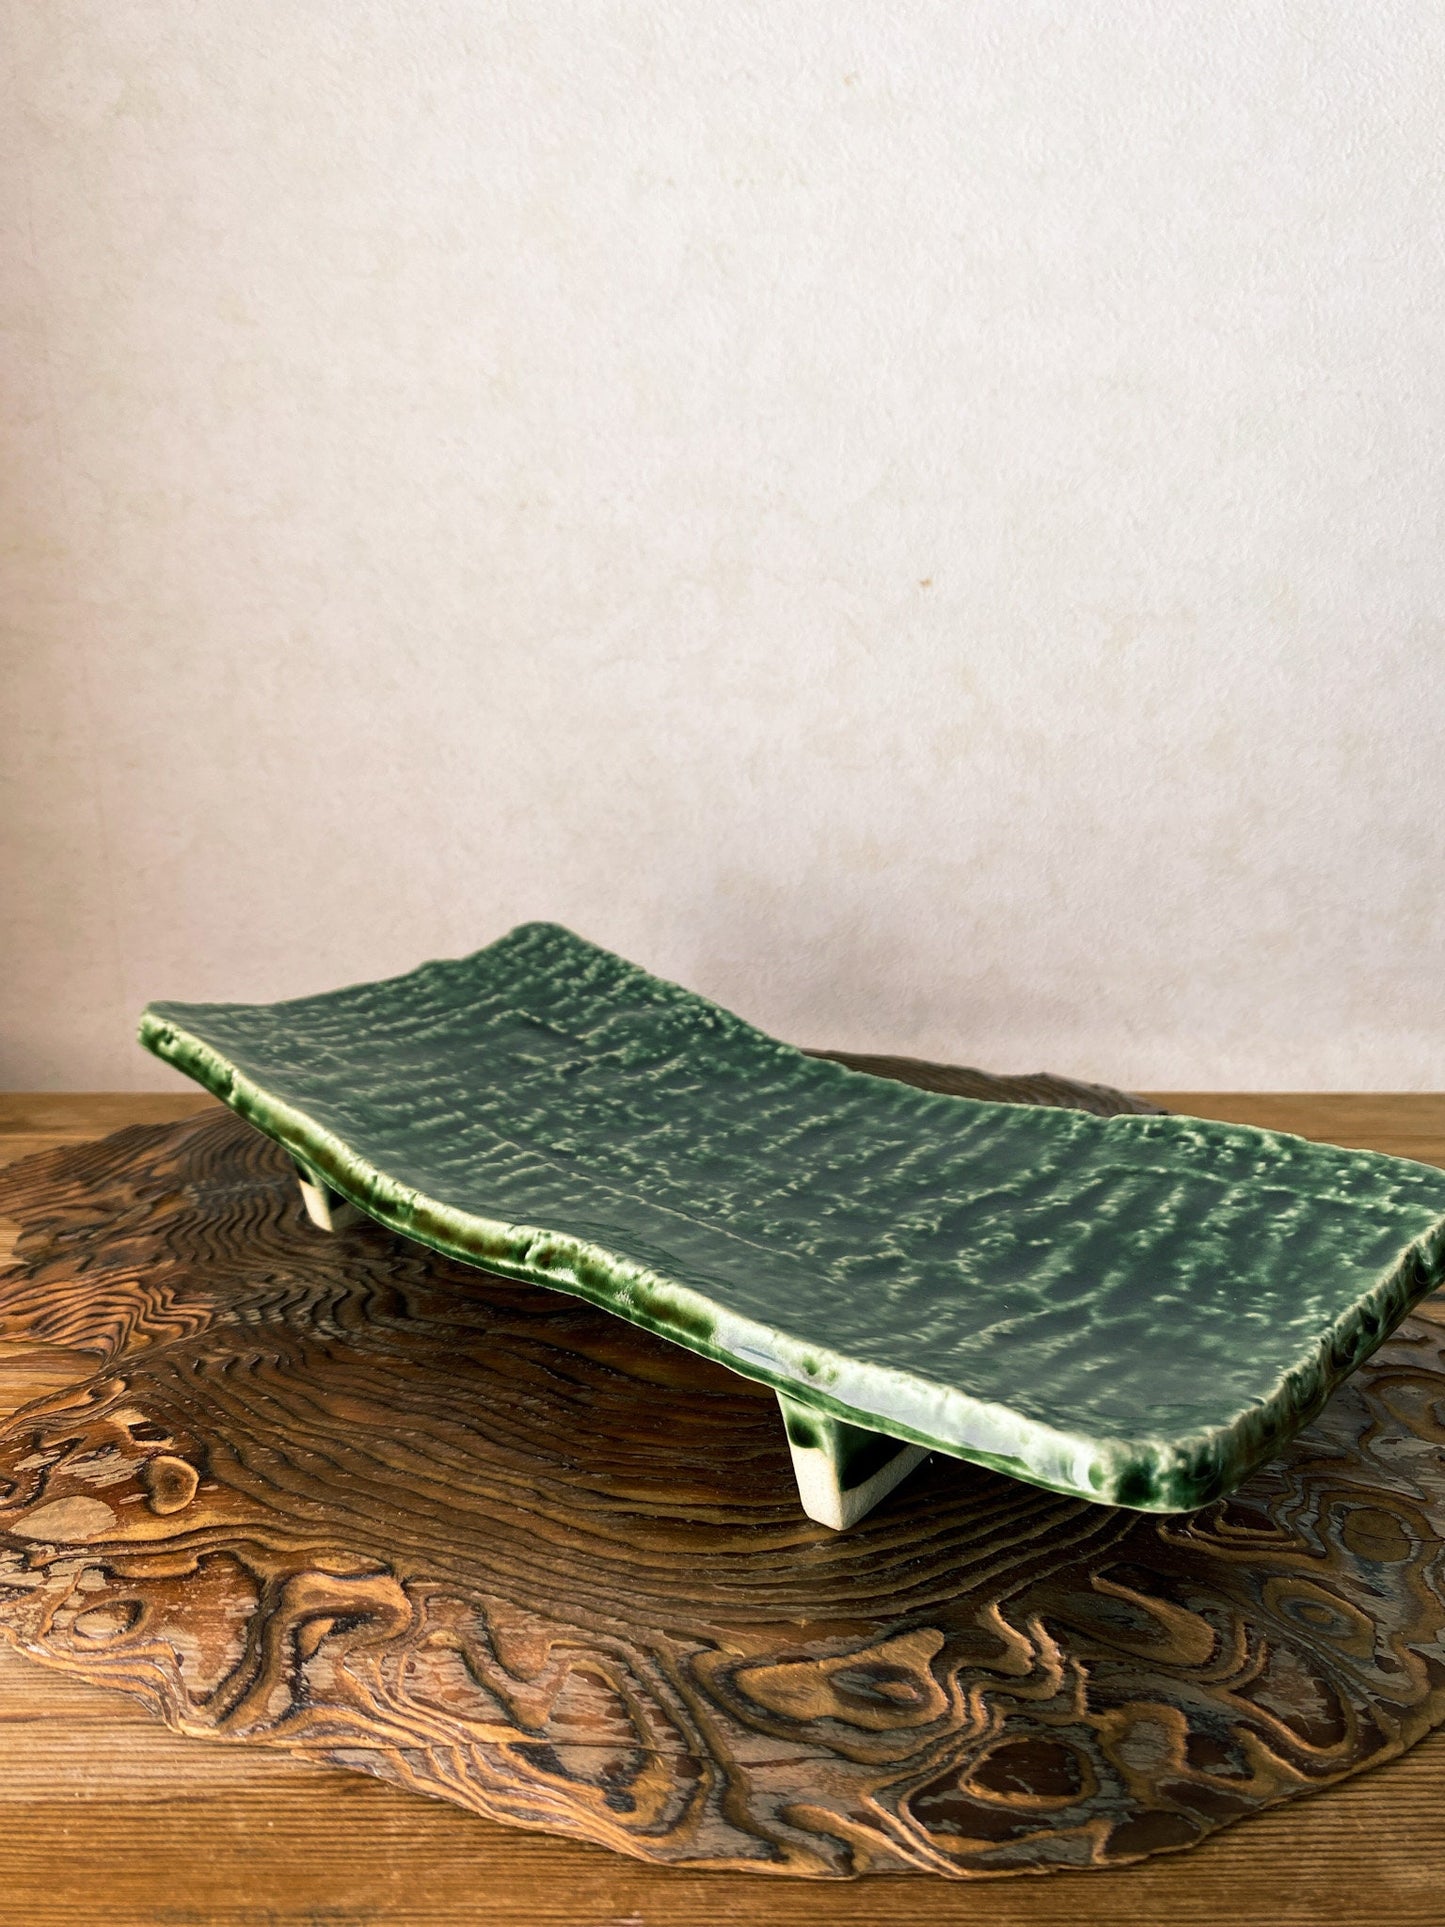 美濃焼 Minoyaki, Japanese Ceramic Saucer with leg,  Size 9.84" x 4.72" x 1.57" height, beautiful green grazed with jomon monyou design.